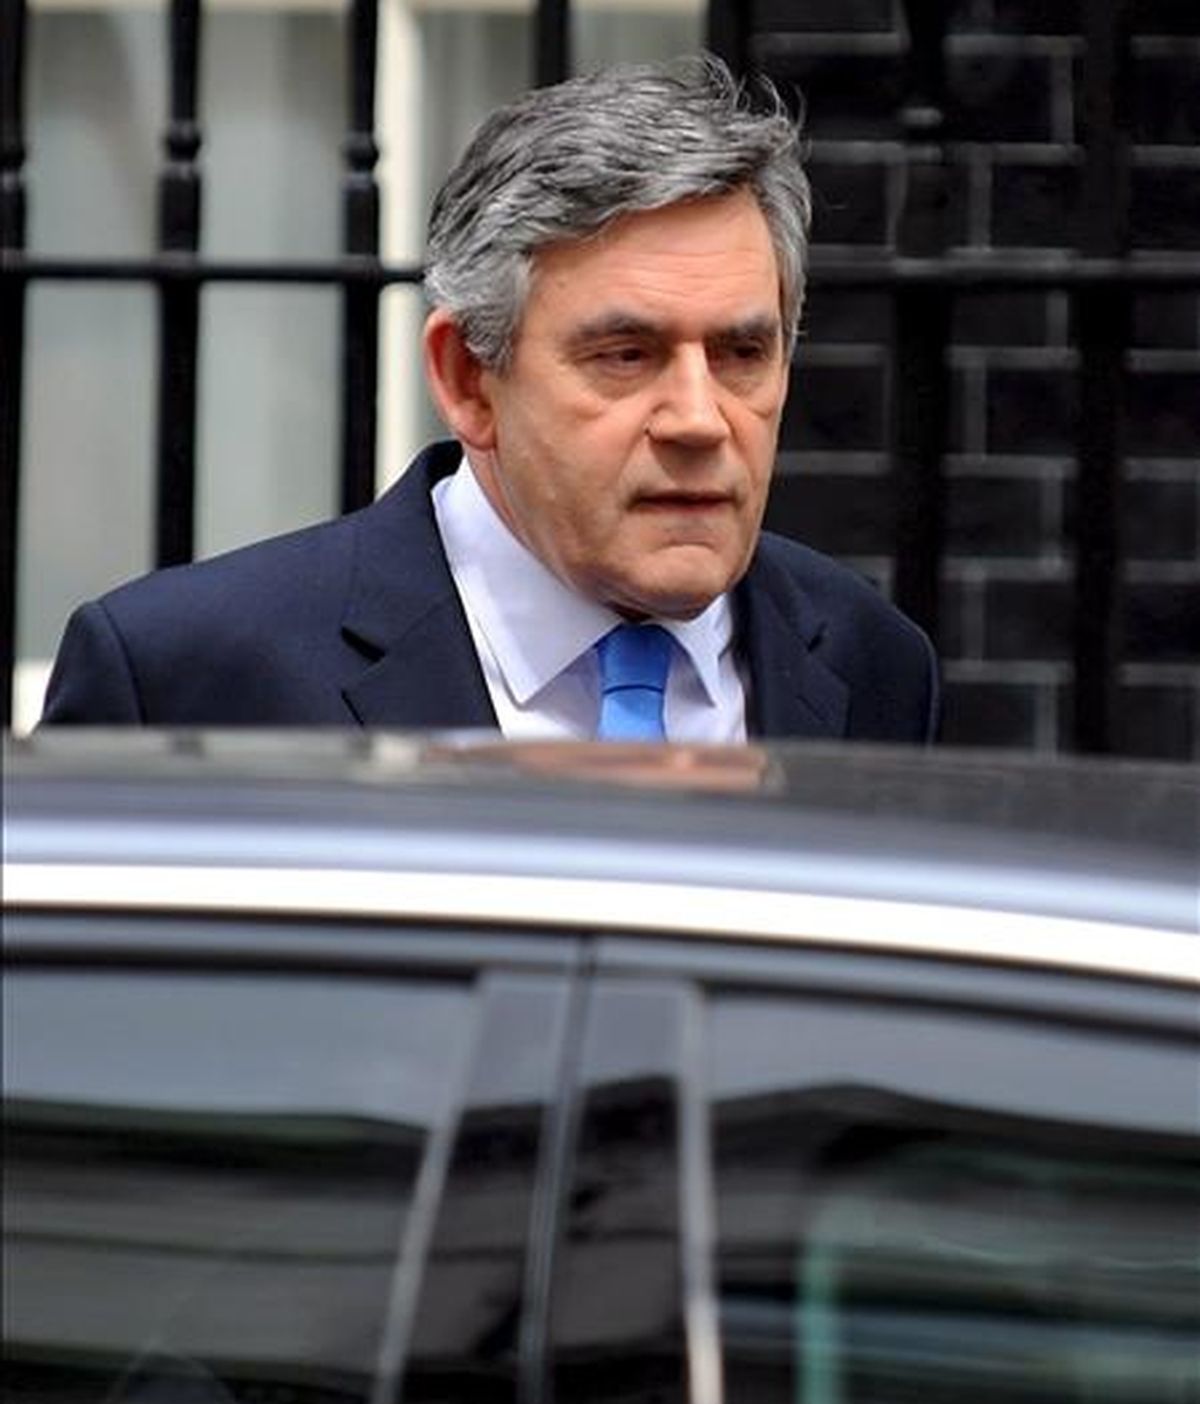 El primer ministro británico, Gordon Brown, sale de su vivienda en el número 10 de Downing Street para dirigirse al Parlamento británico, el pasado 21 de mayo. EFE/Archivo